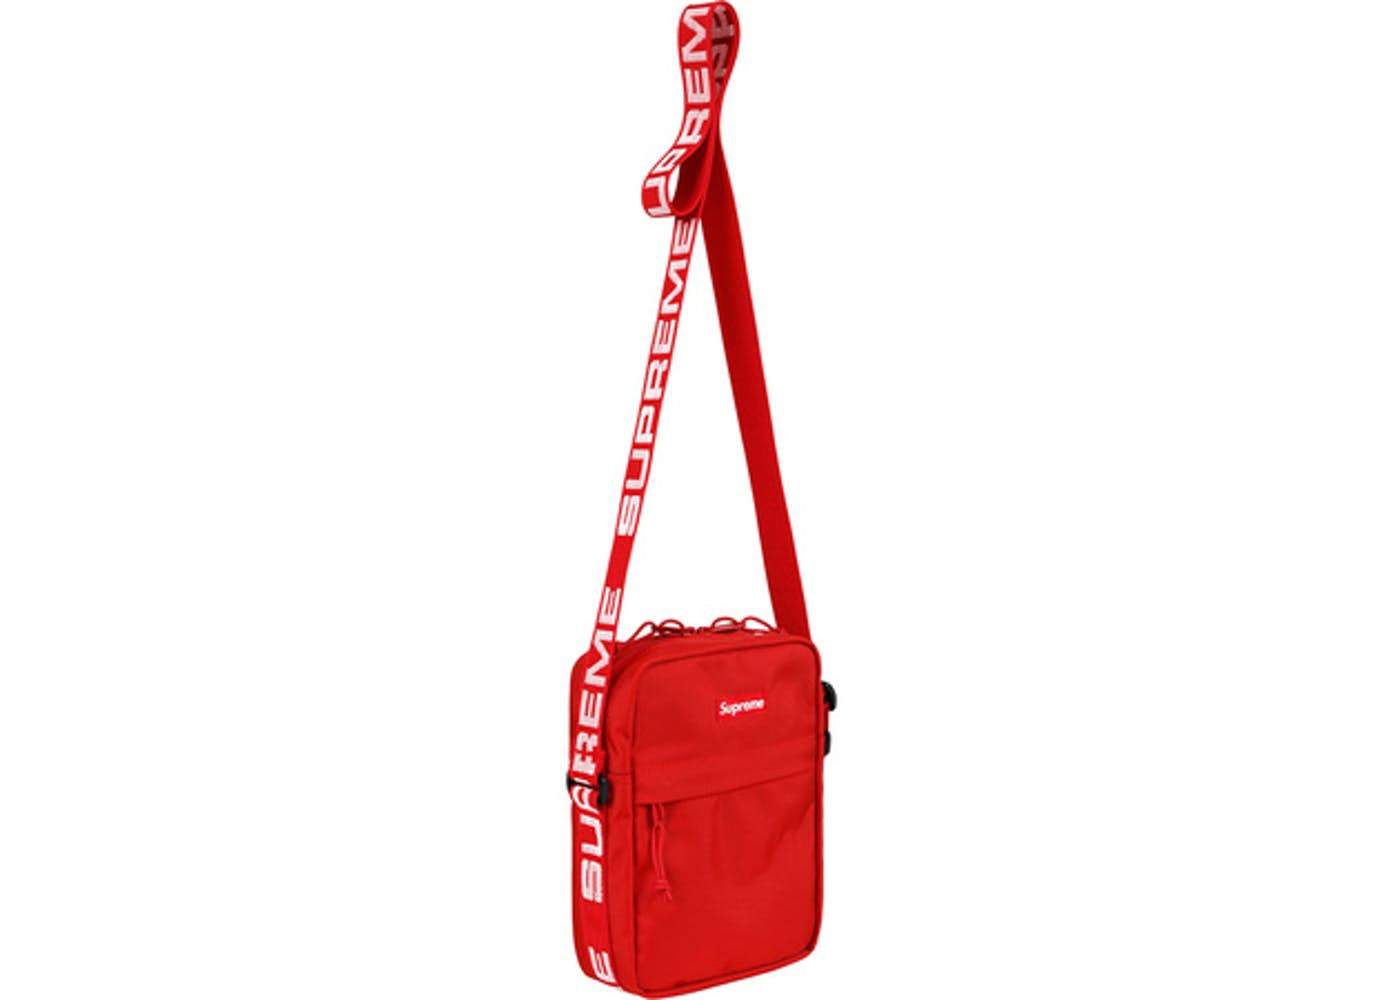 ショルダーバッグ18ss Supreme Shoulder Bag Red 赤色